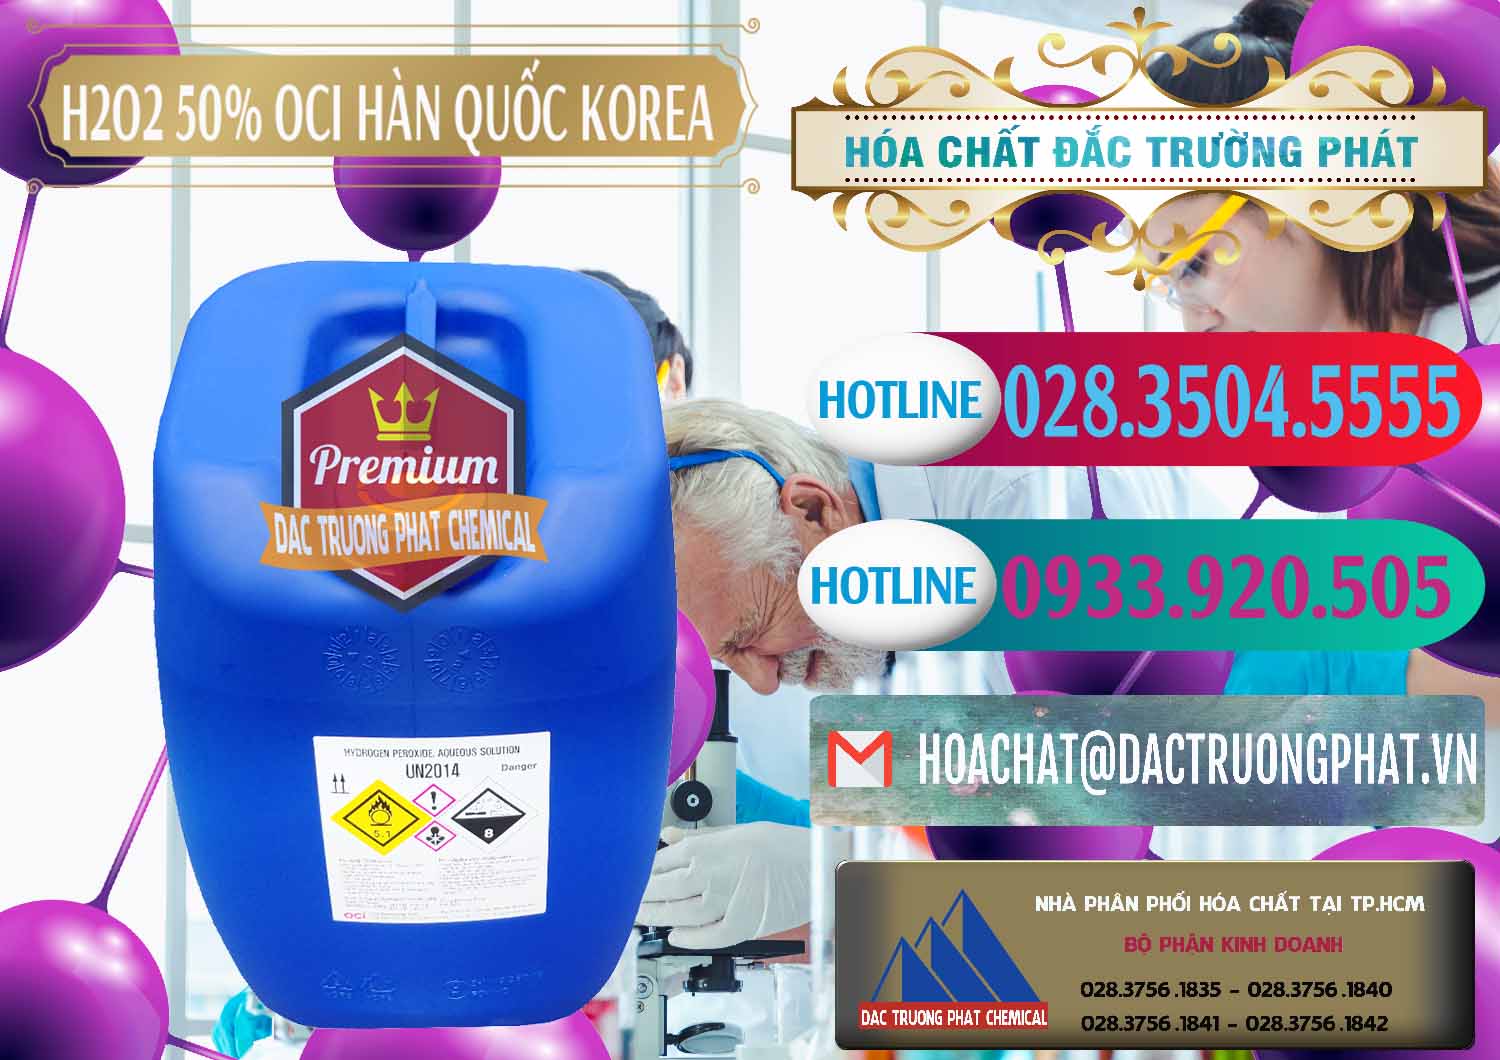 Cty bán & cung ứng H2O2 - Hydrogen Peroxide 50% OCI Hàn Quốc Korea - 0075 - Chuyên cung ứng - phân phối hóa chất tại TP.HCM - truongphat.vn